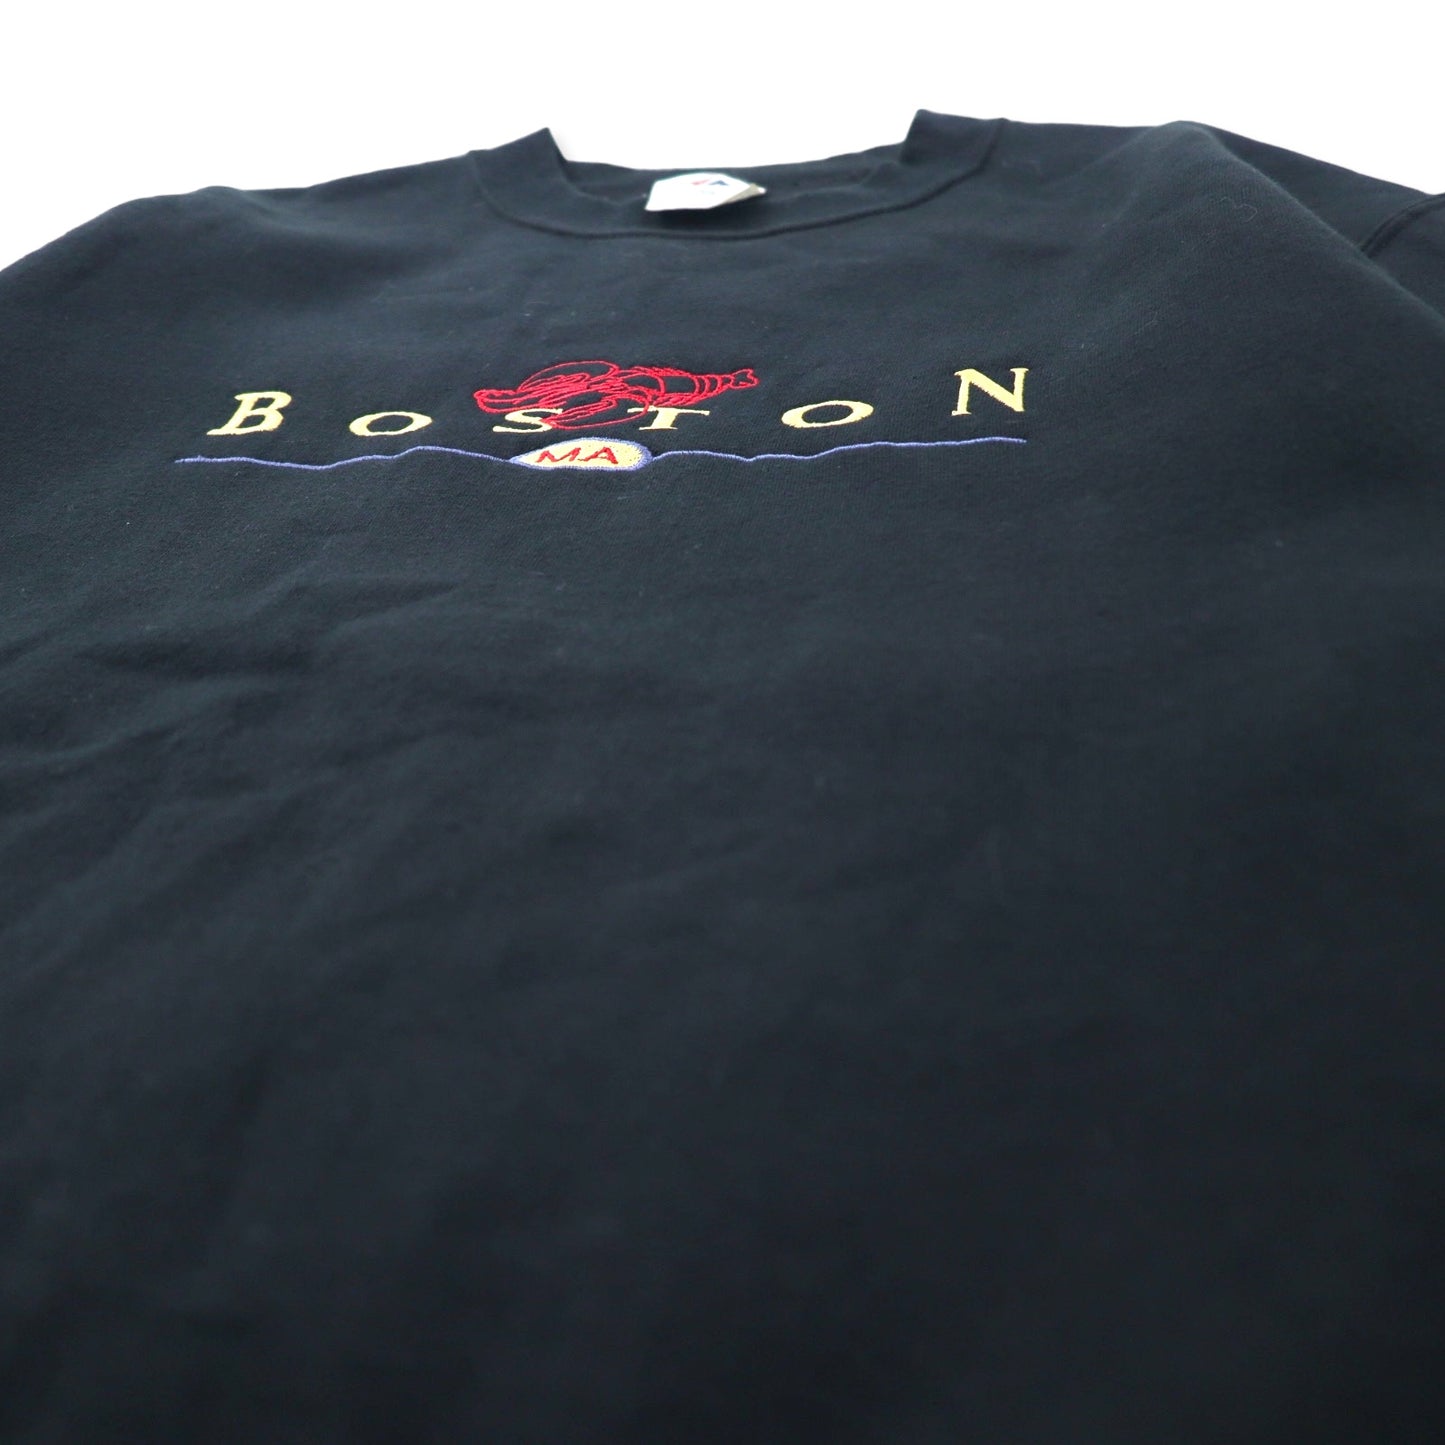 JERZEES 90年代 カレッジ刺繍 スウェット S ブラック コットン 裏起毛 BOSTON メキシコ製